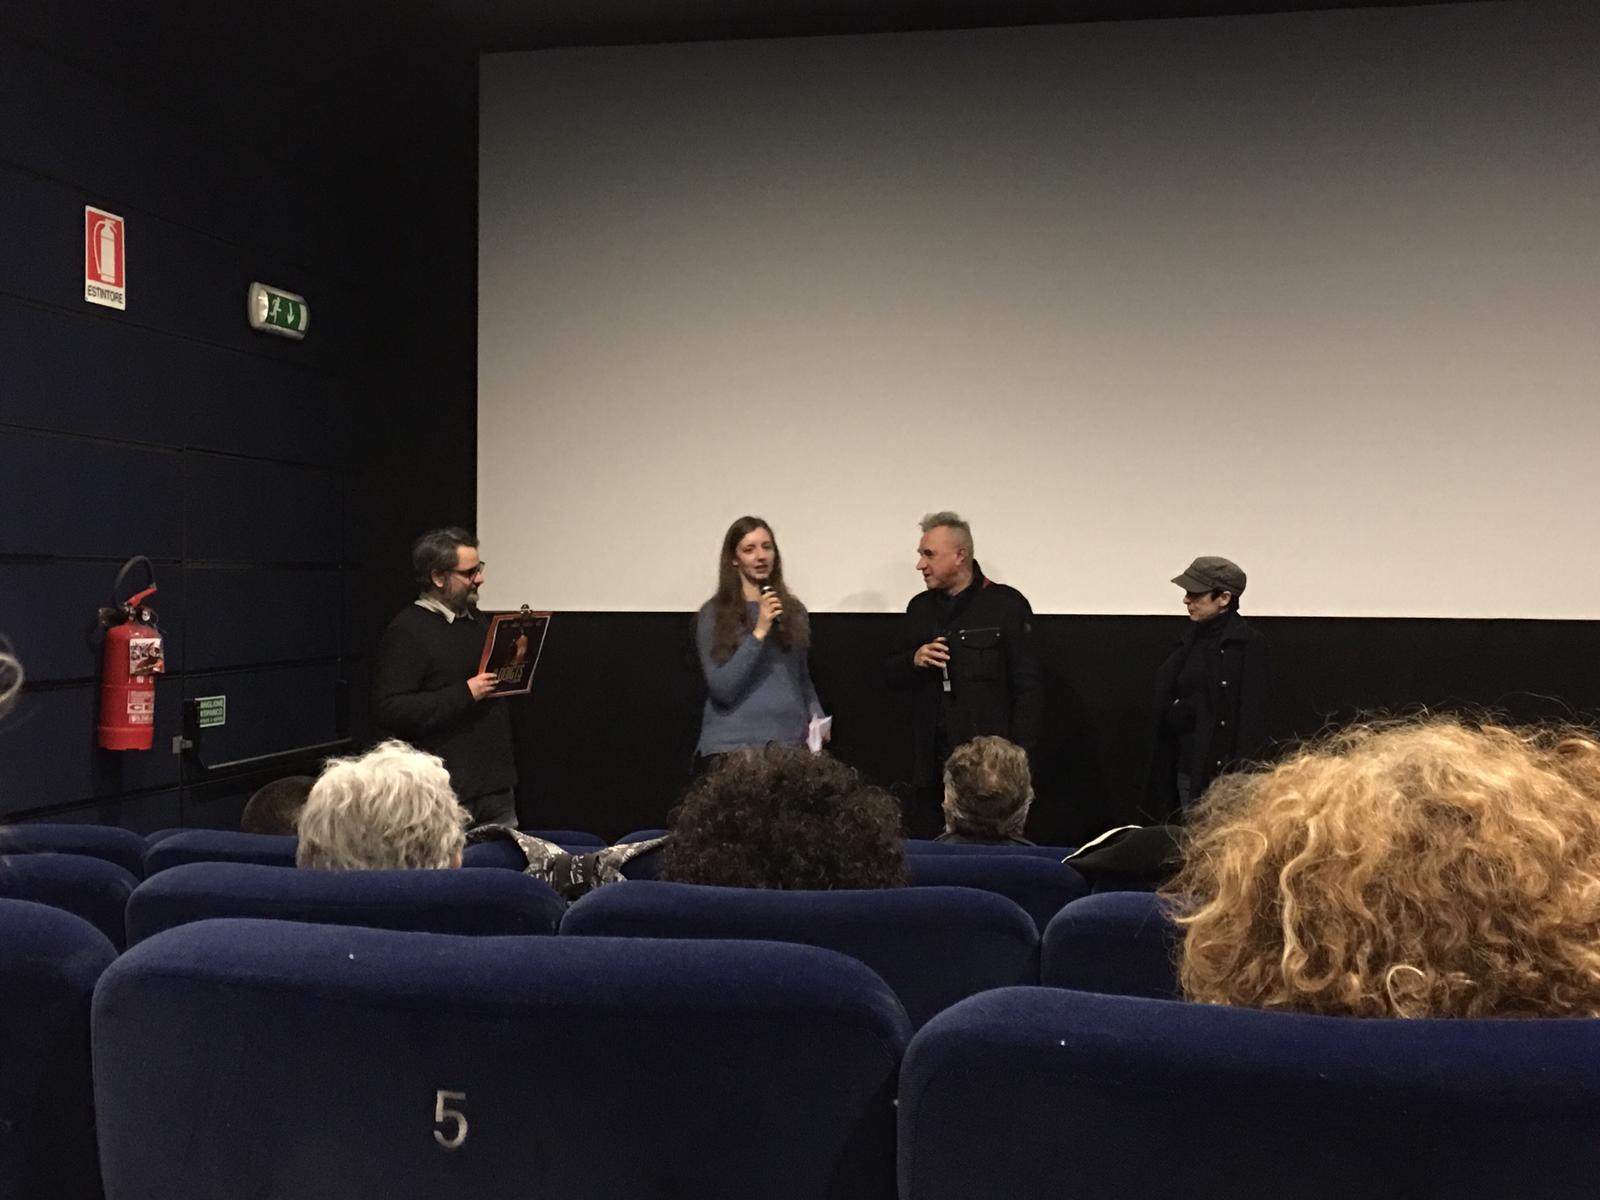 Presentazione di "9 dita" presso il cinema Visionario di Udine